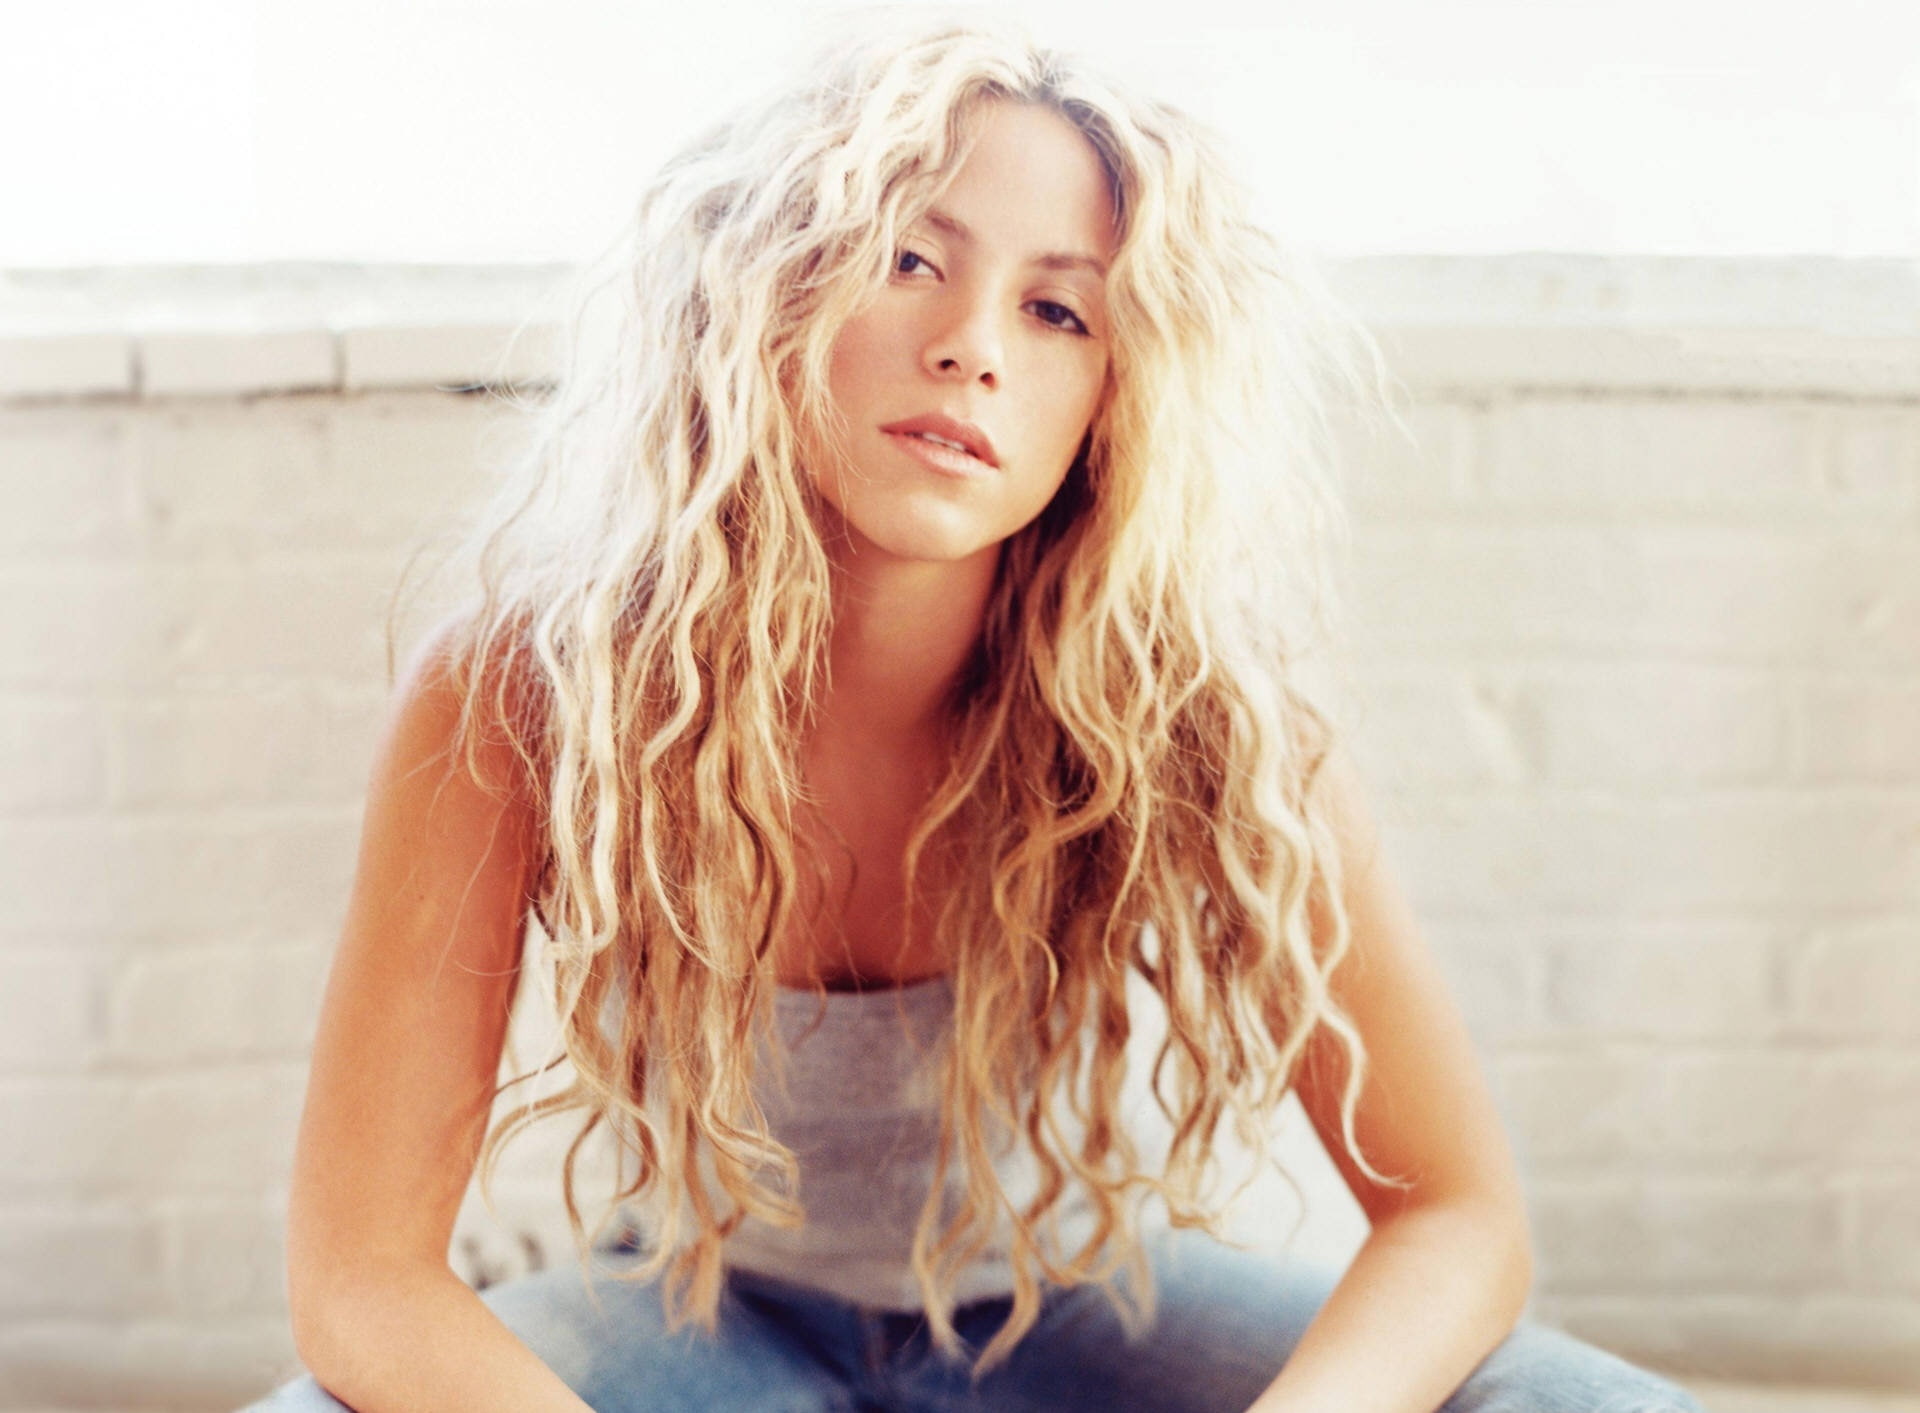 Shakira Mebarak 18, Shakira, Music, hair, long hair, blond hair